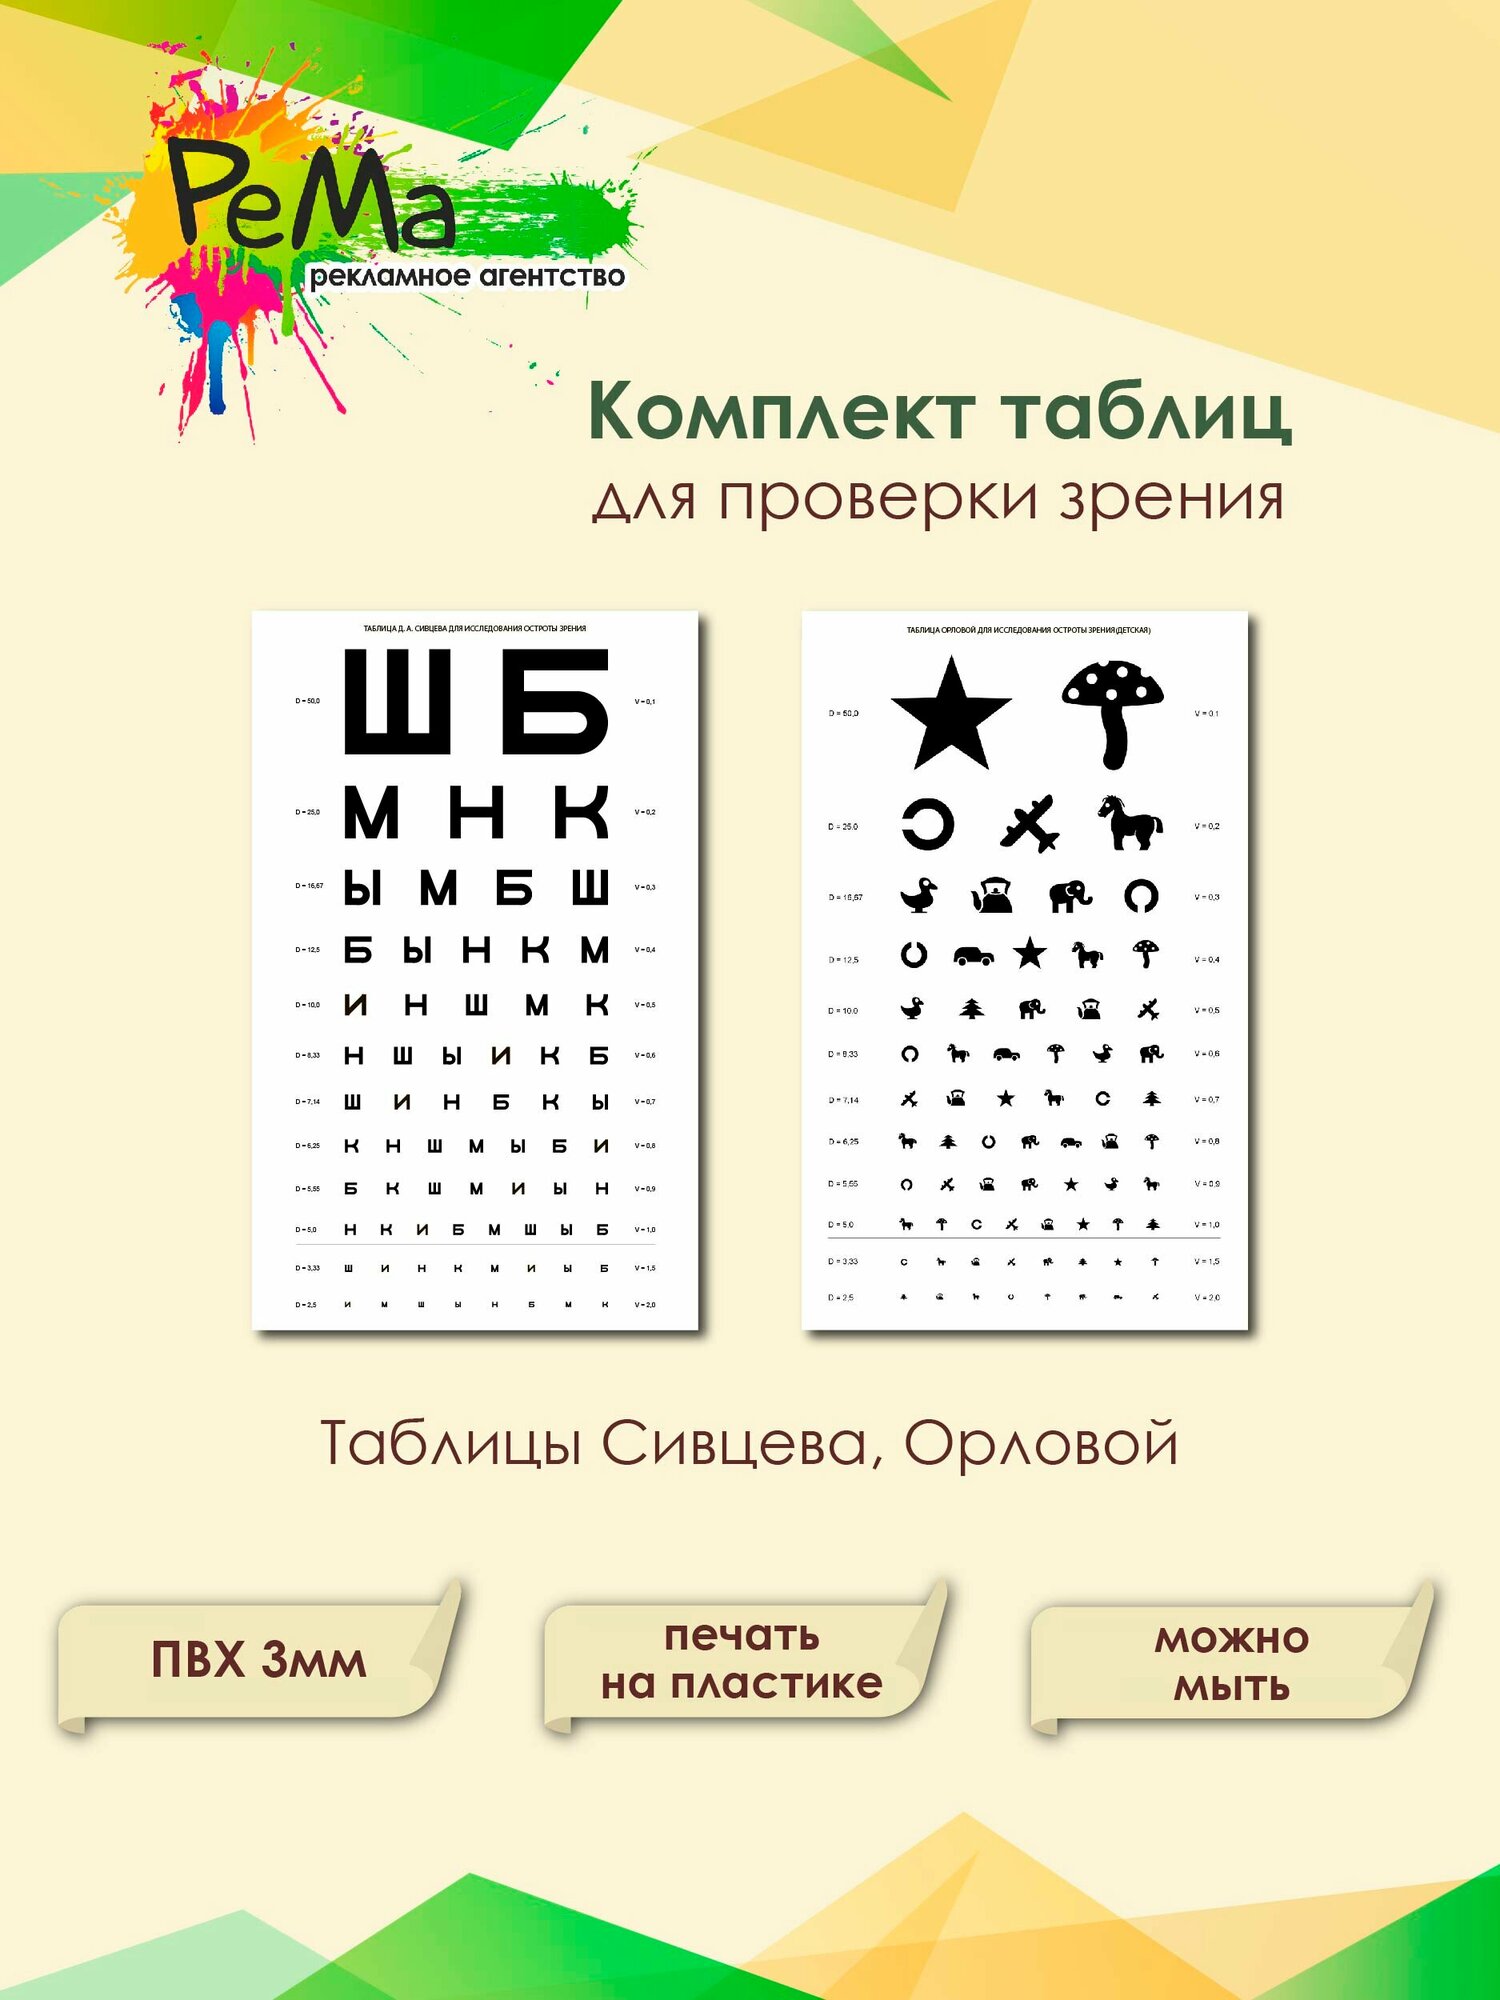 Комплект офтальмологических таблиц Сивцева Орловой